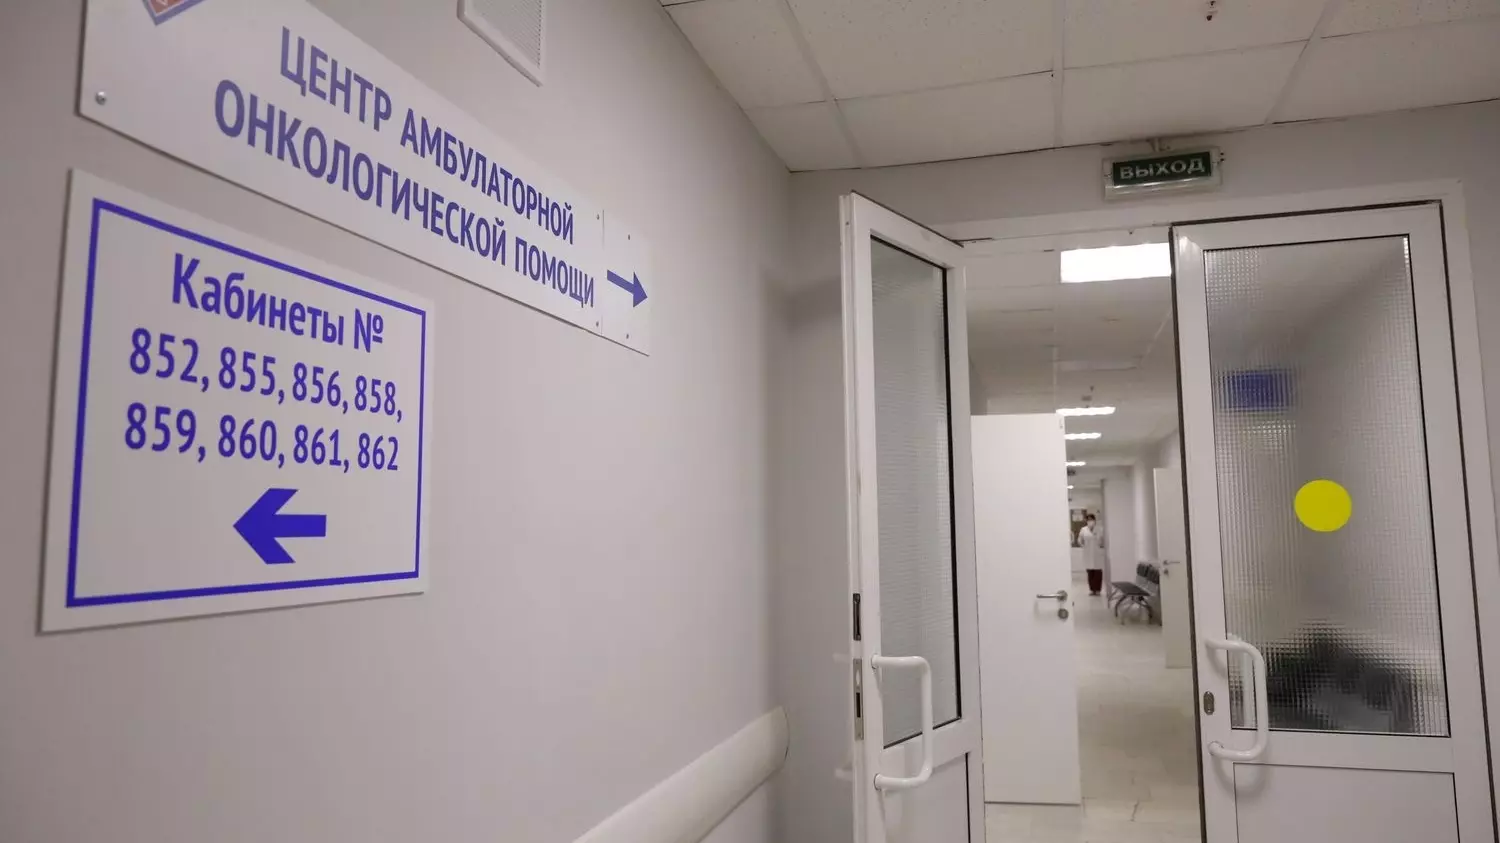 Центр амбулаторной онкологической помощи открылся в Нижнем Новгороде